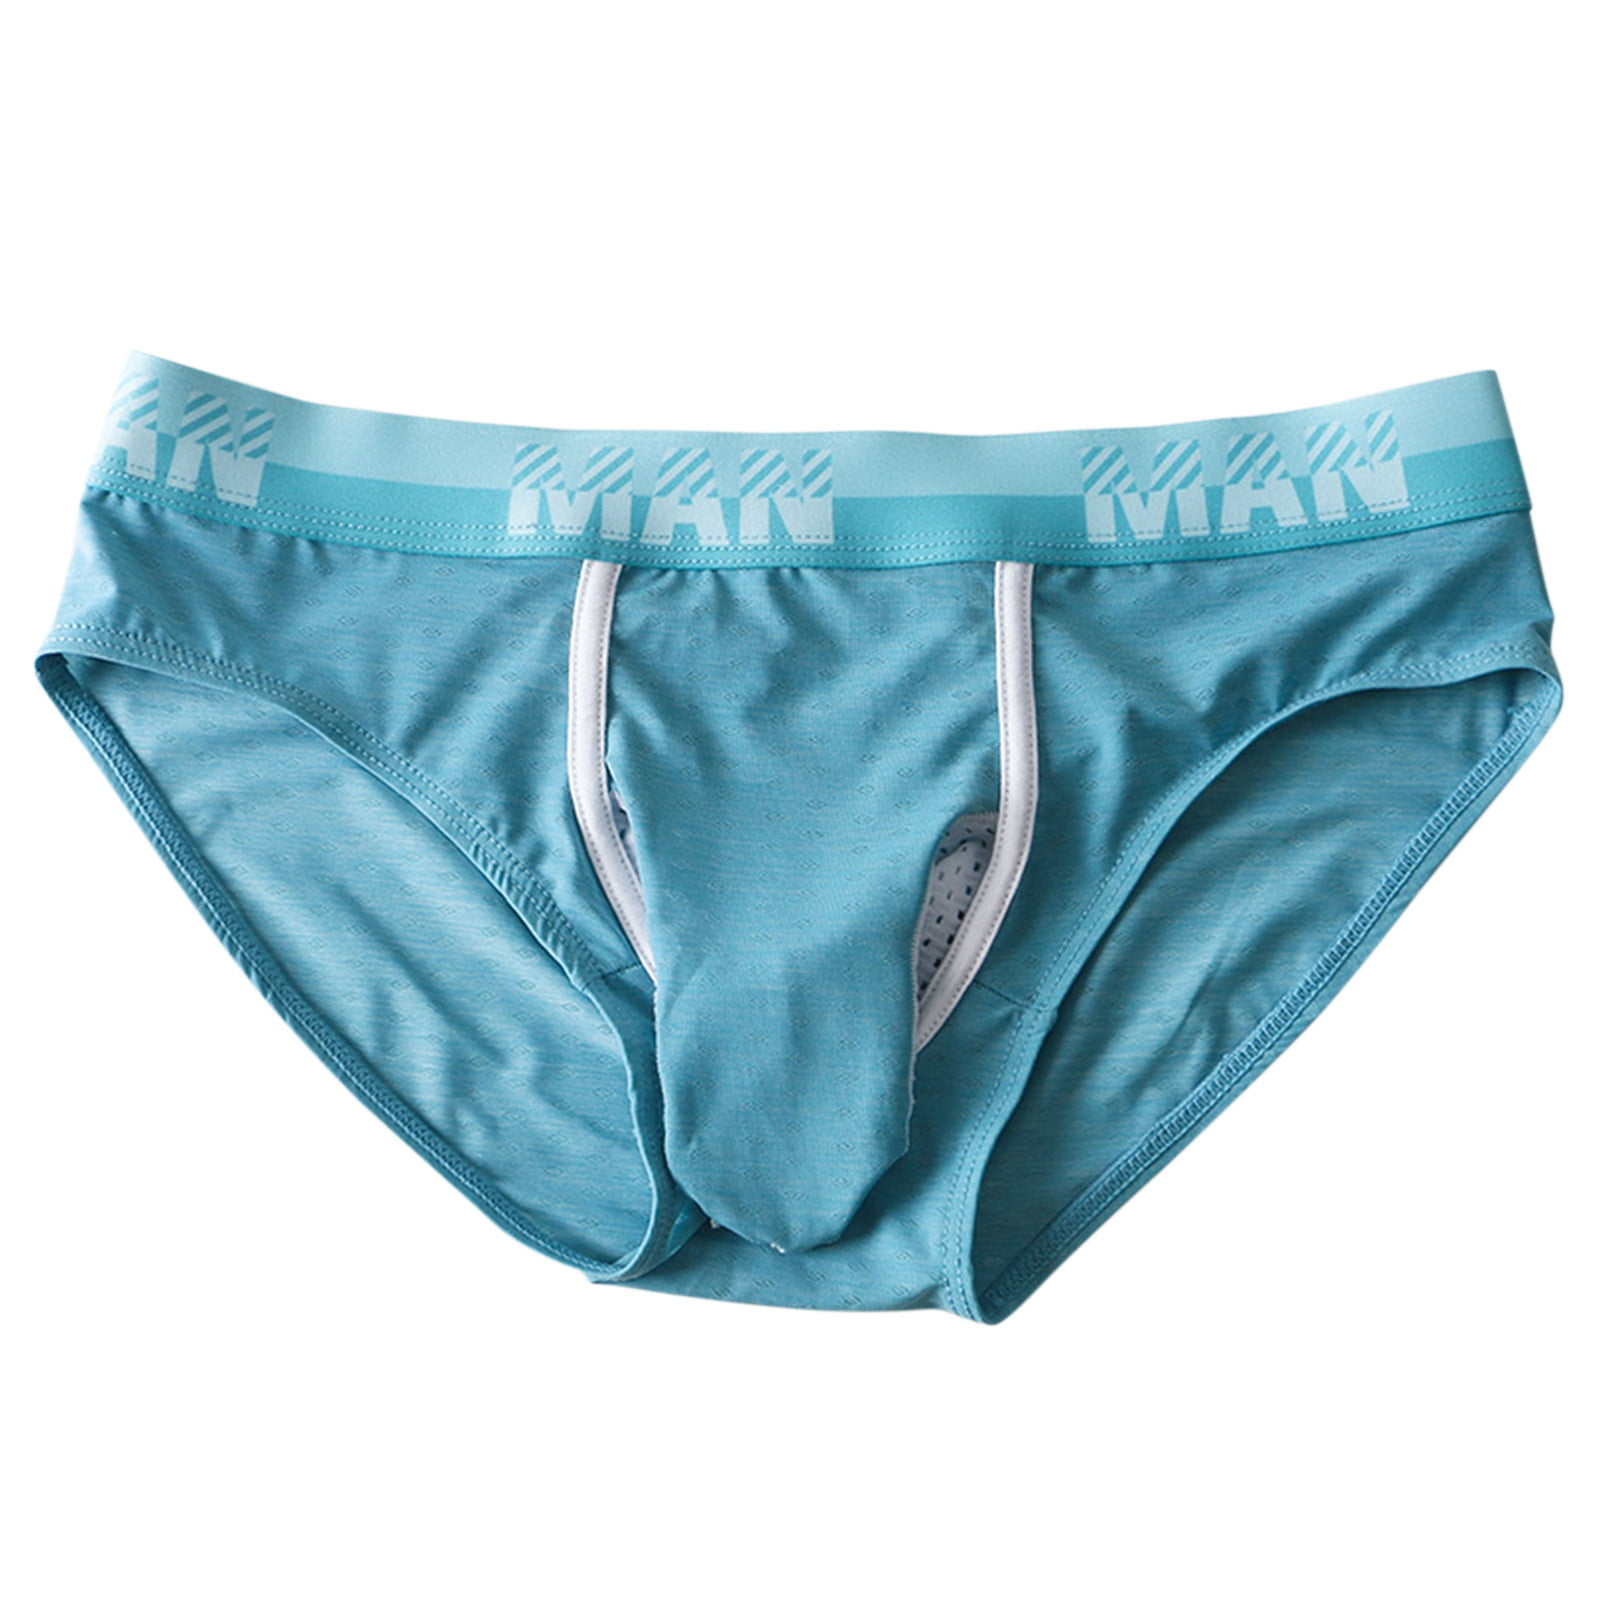 zuwimk Mens Underwear,Men's Underwear Cotton Boxer Briefs